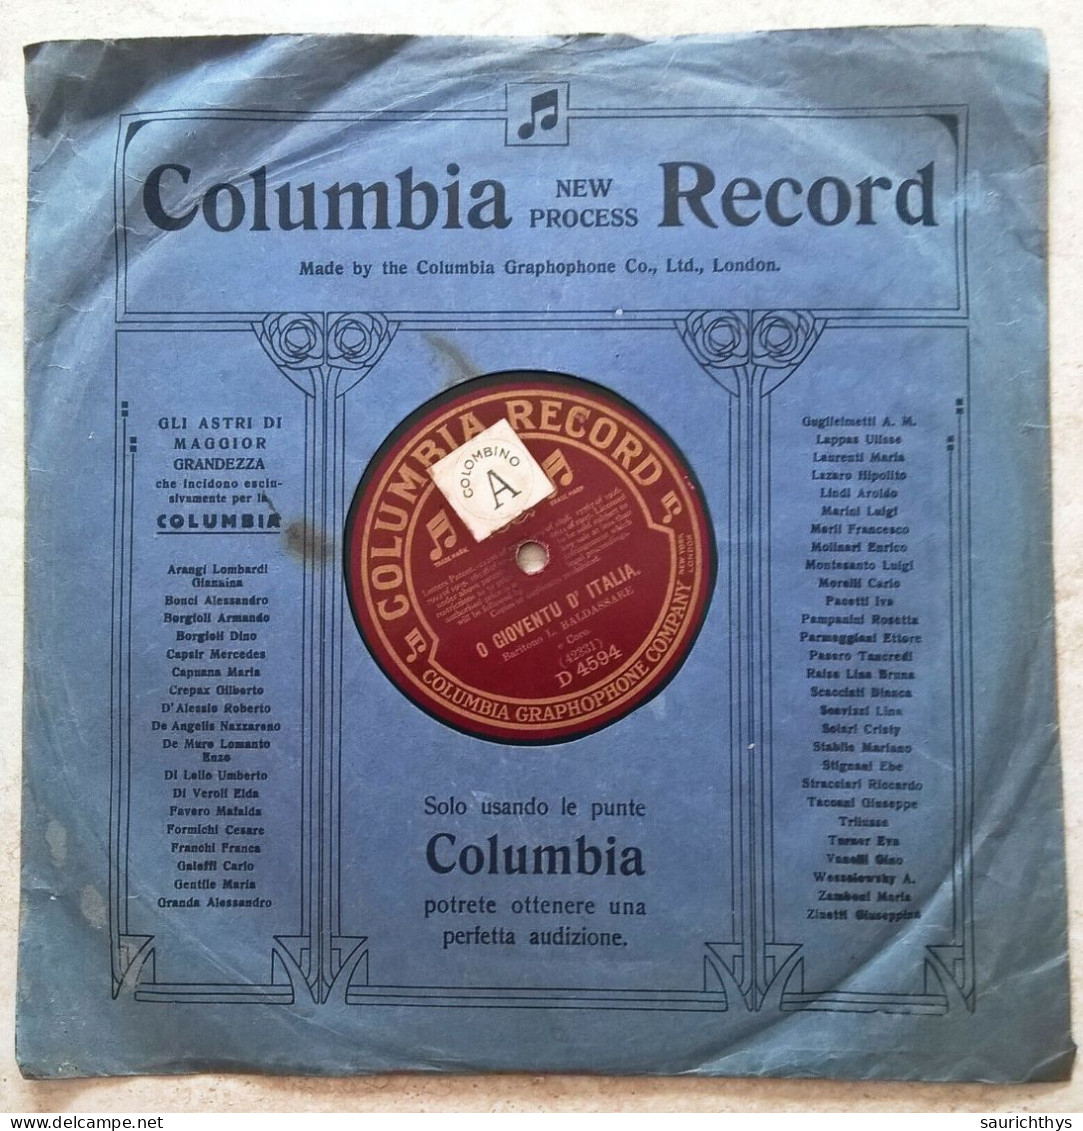 Disco 78 Giri Patriottico Columbia Record - O Gioventù D'Italia / Trieste - Baritono Baldassarre - Speciale Formaten